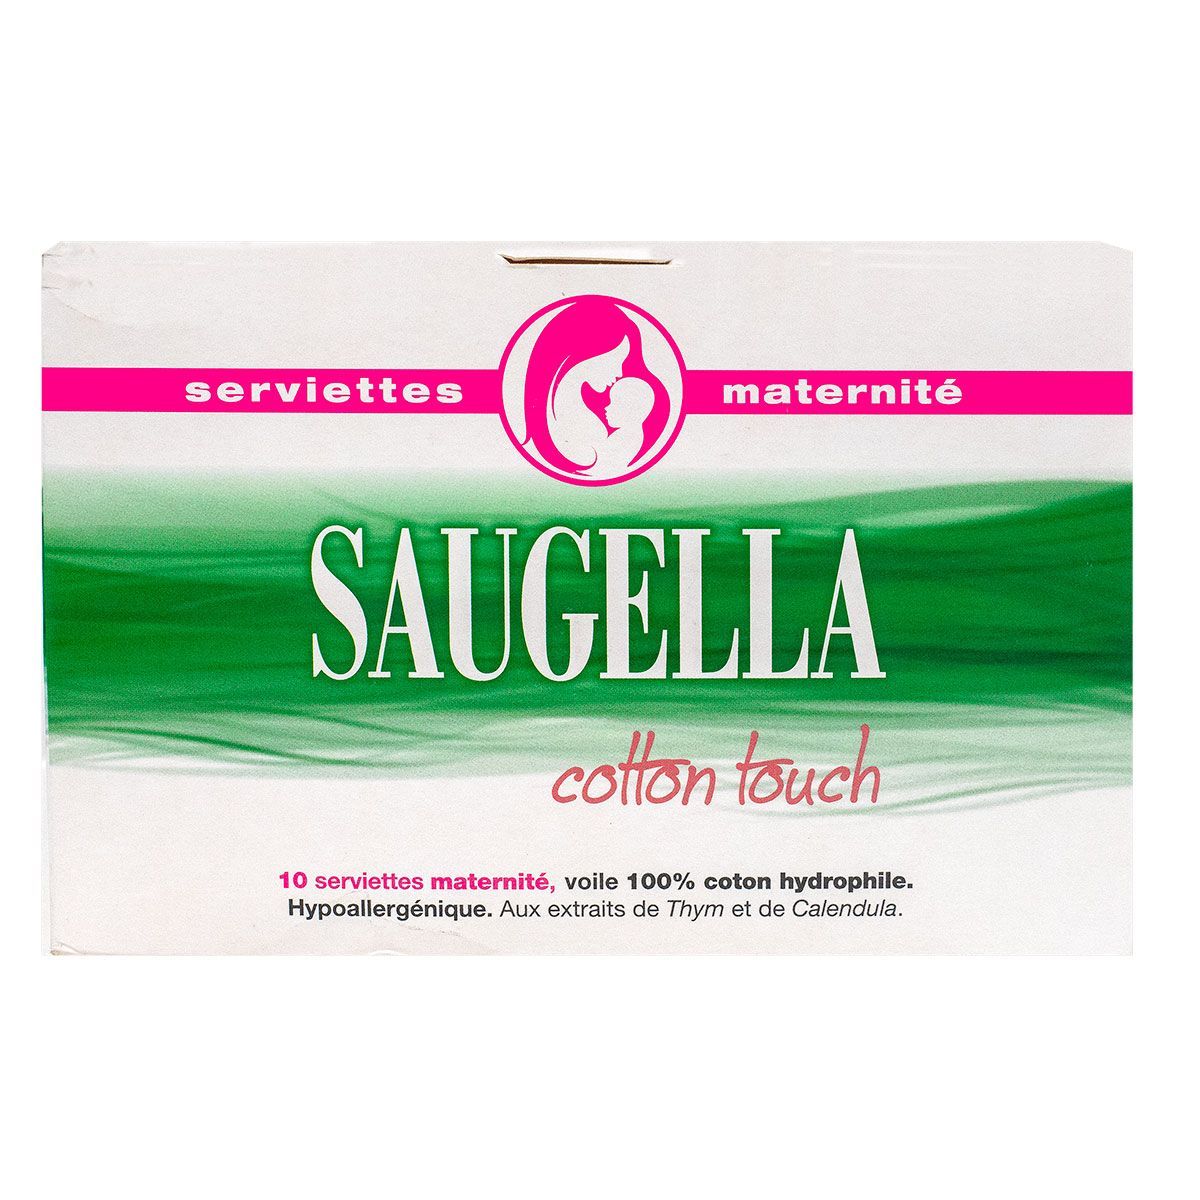 Cotton Touch 10 serviettes maternité sont hypoallergéniques